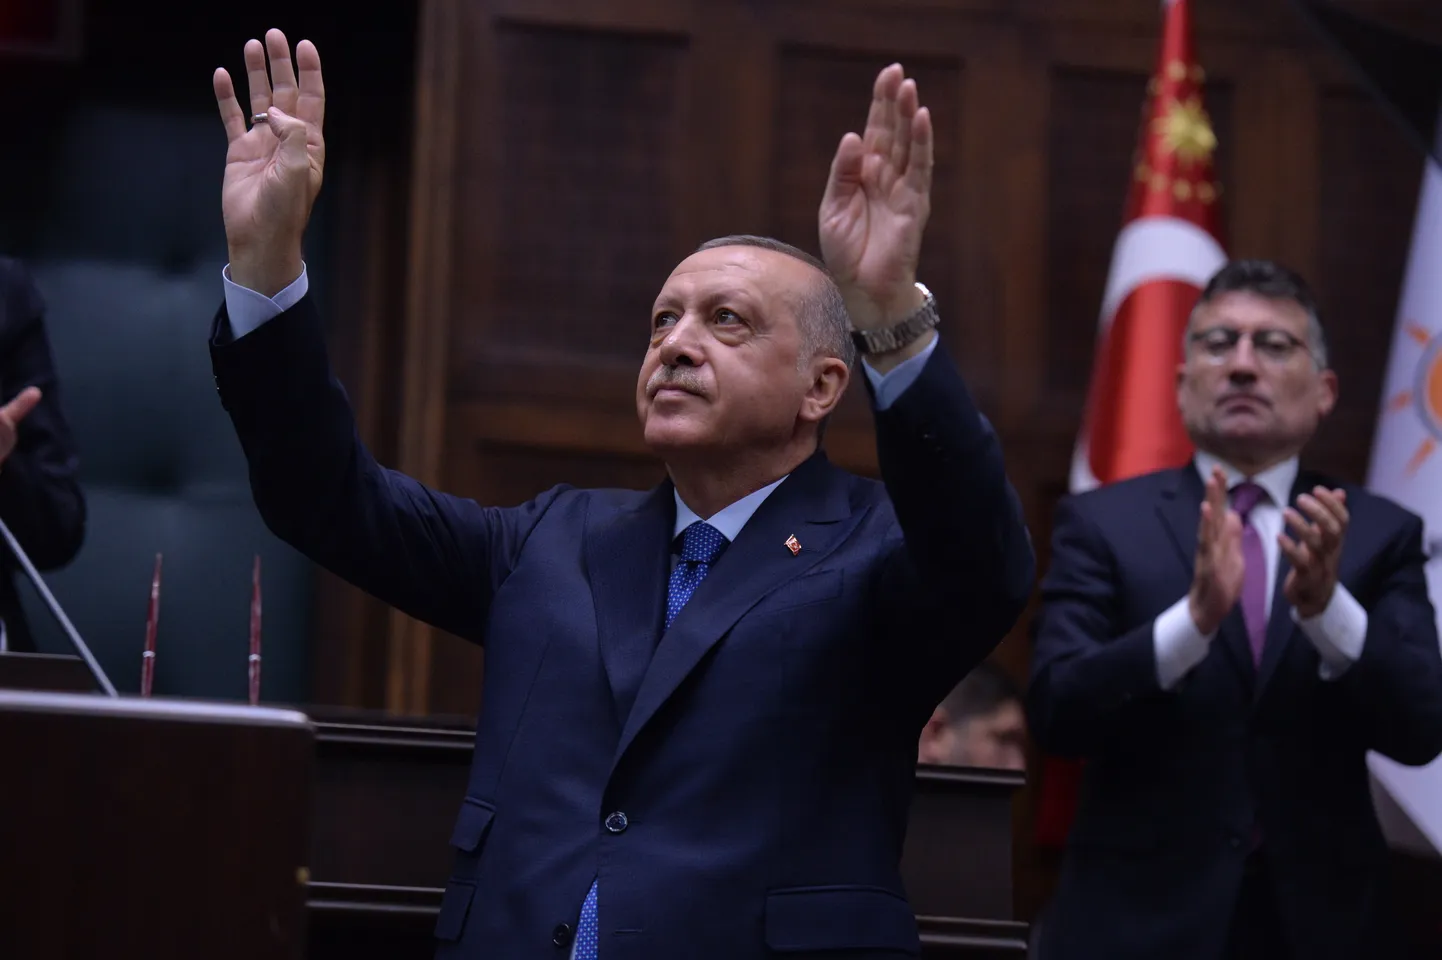 Türgi president Recep Tayyip Erdoğan.